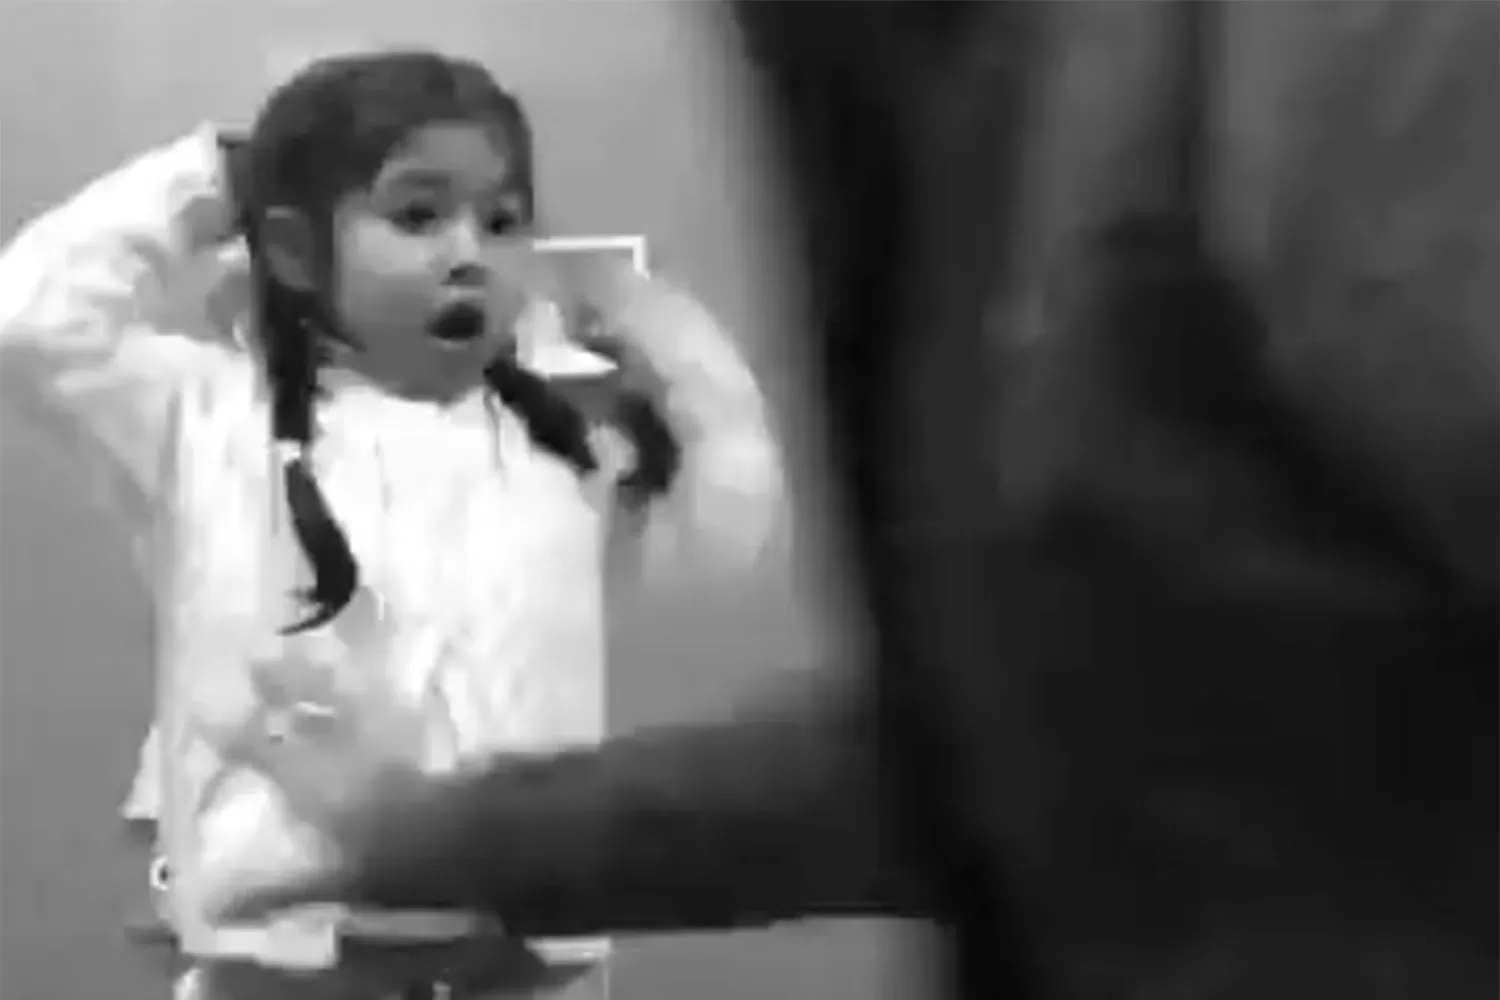 ASUSTADA. La pequeña protagonista del video fue sorprendida por una pelea de perros.